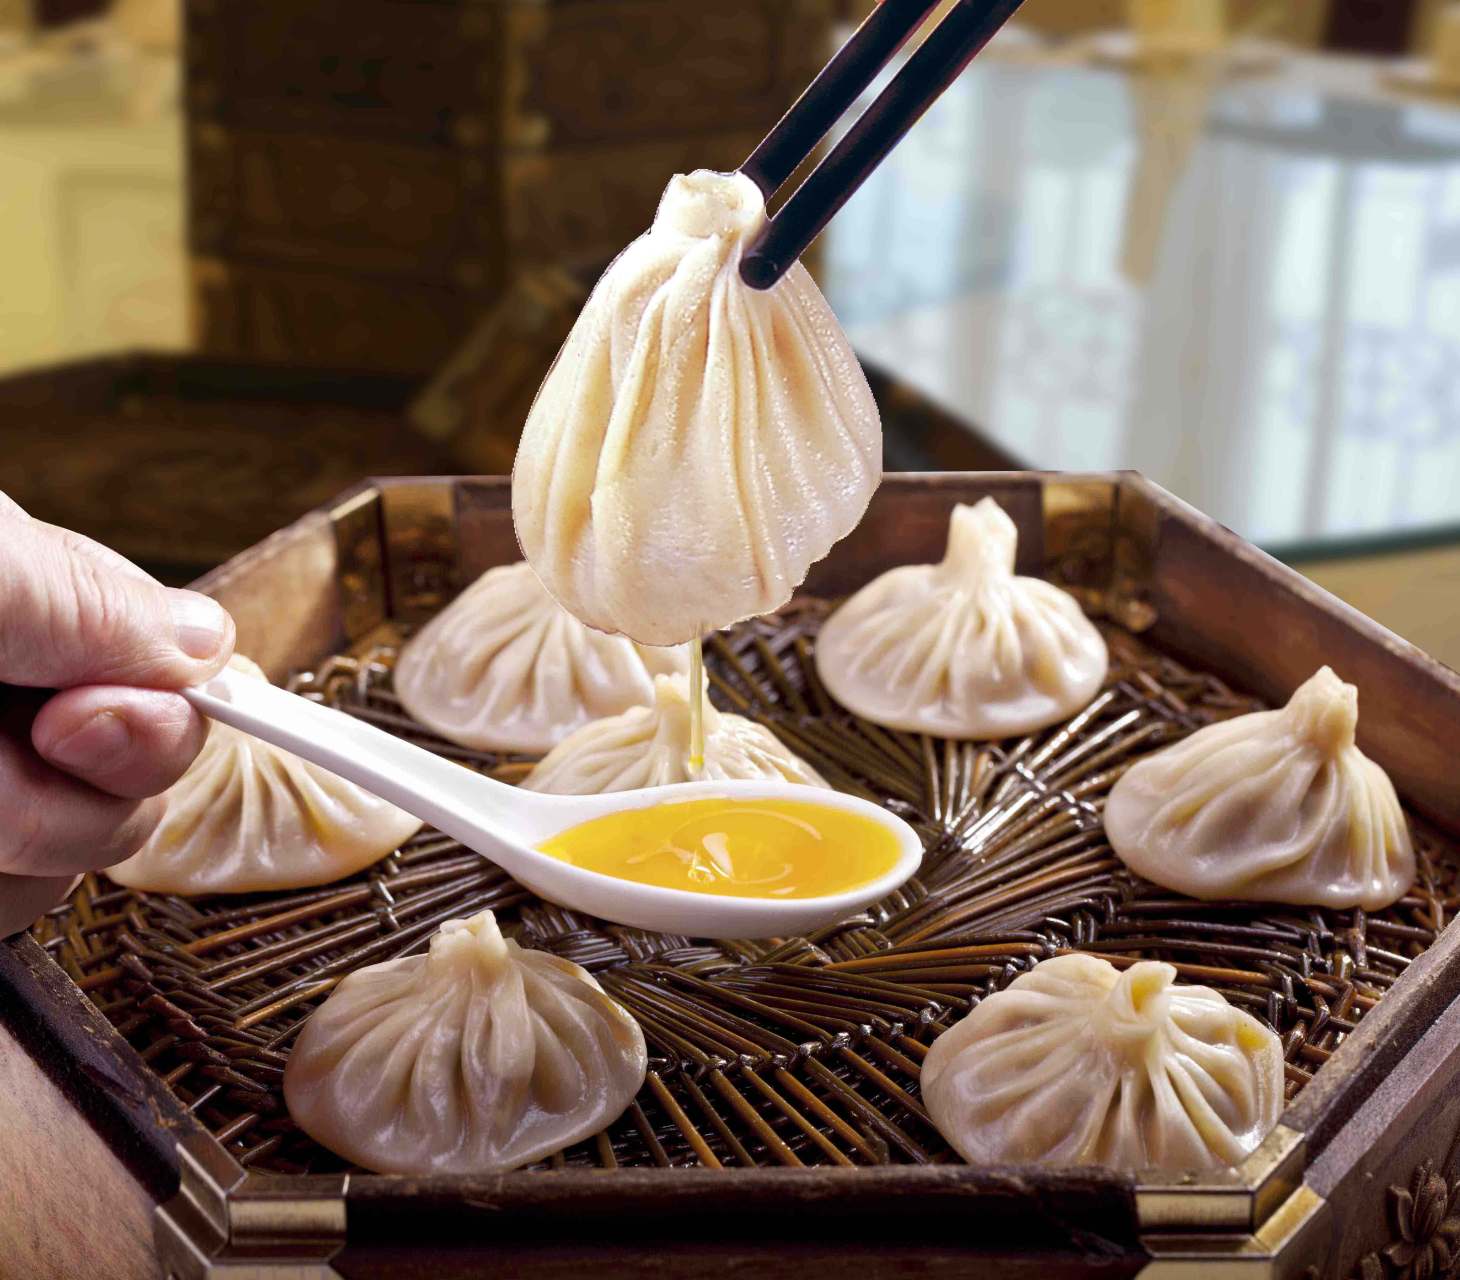 来西安必吃的老字号,贾三灌汤包在西安的名气非常大,字号也是很响亮的